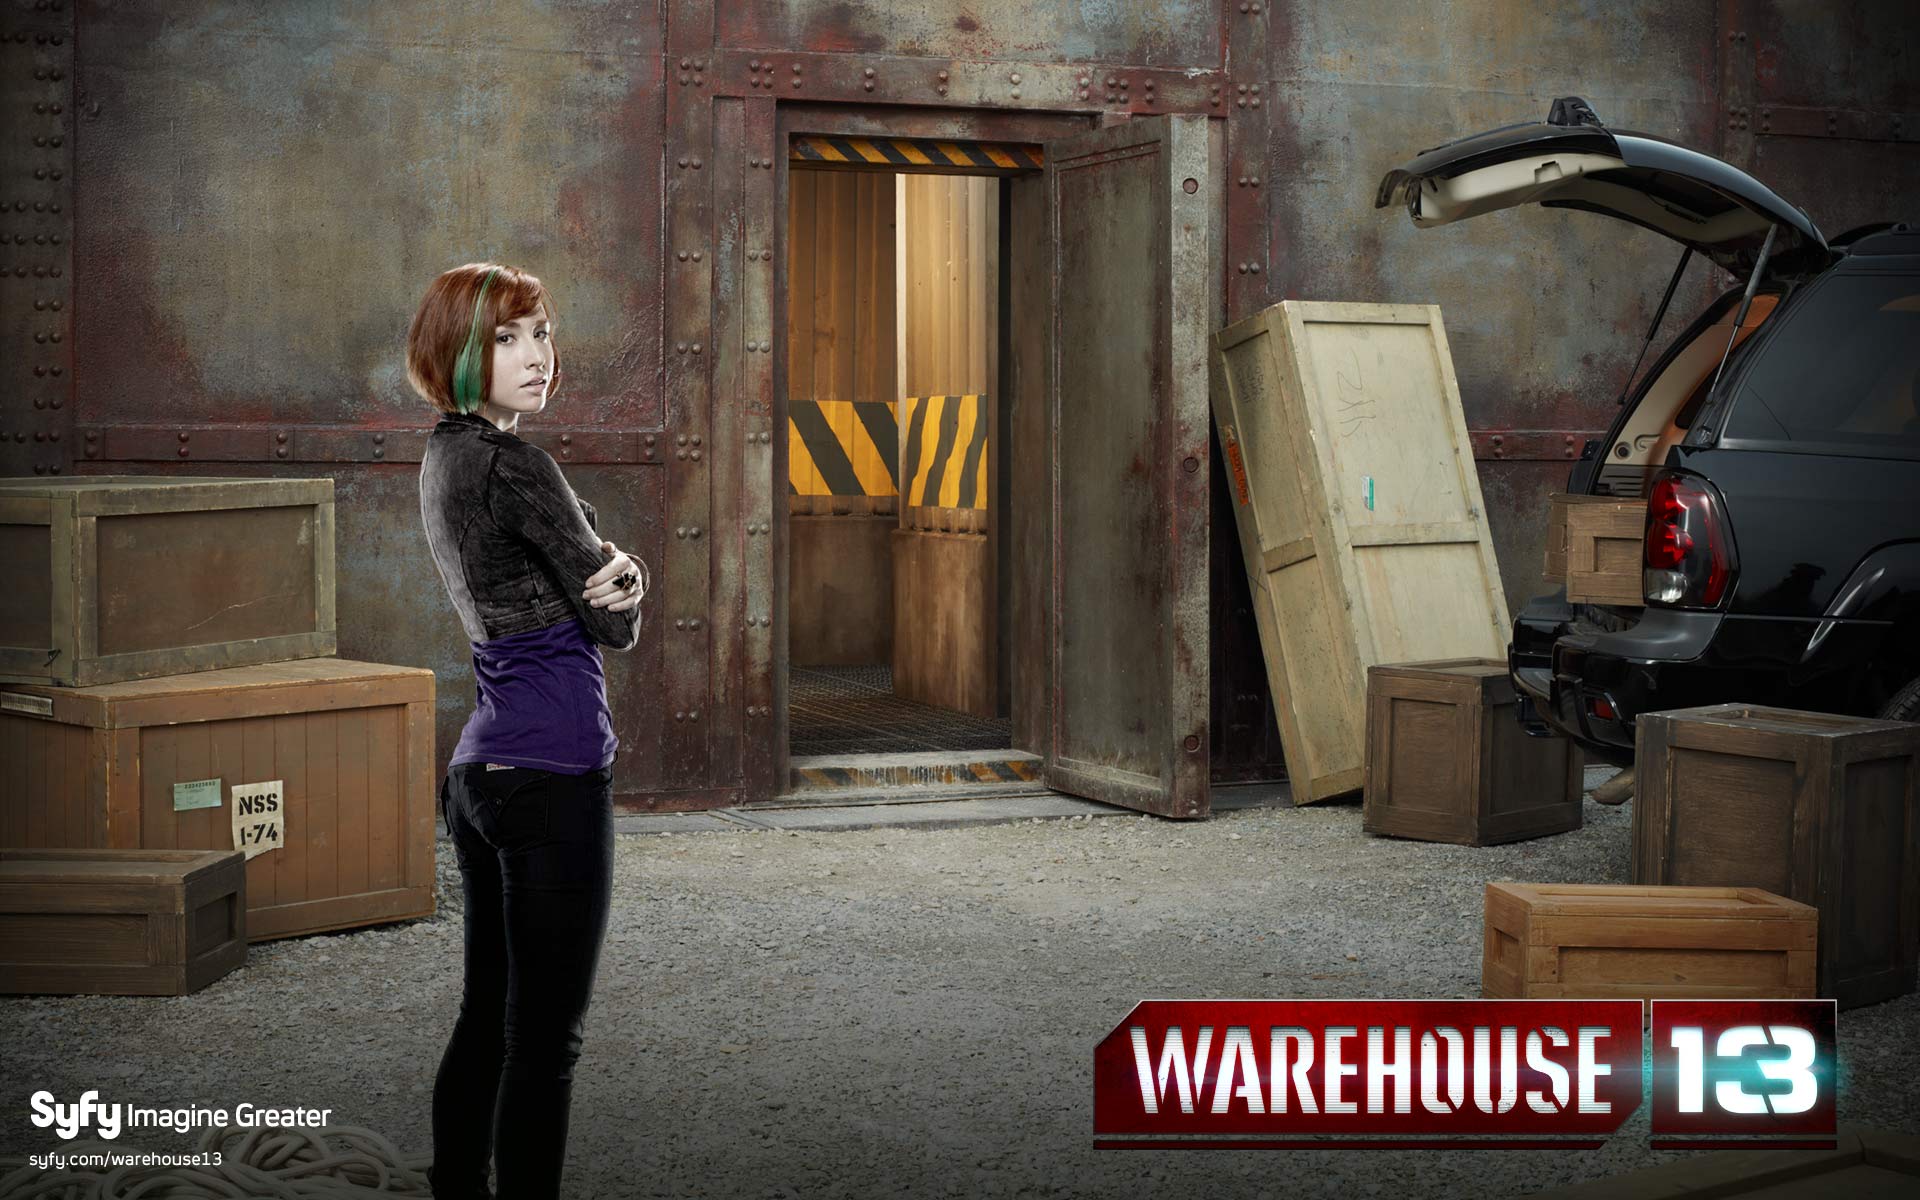 Warehouse 13 Wallpaper .hipwallpaper.com